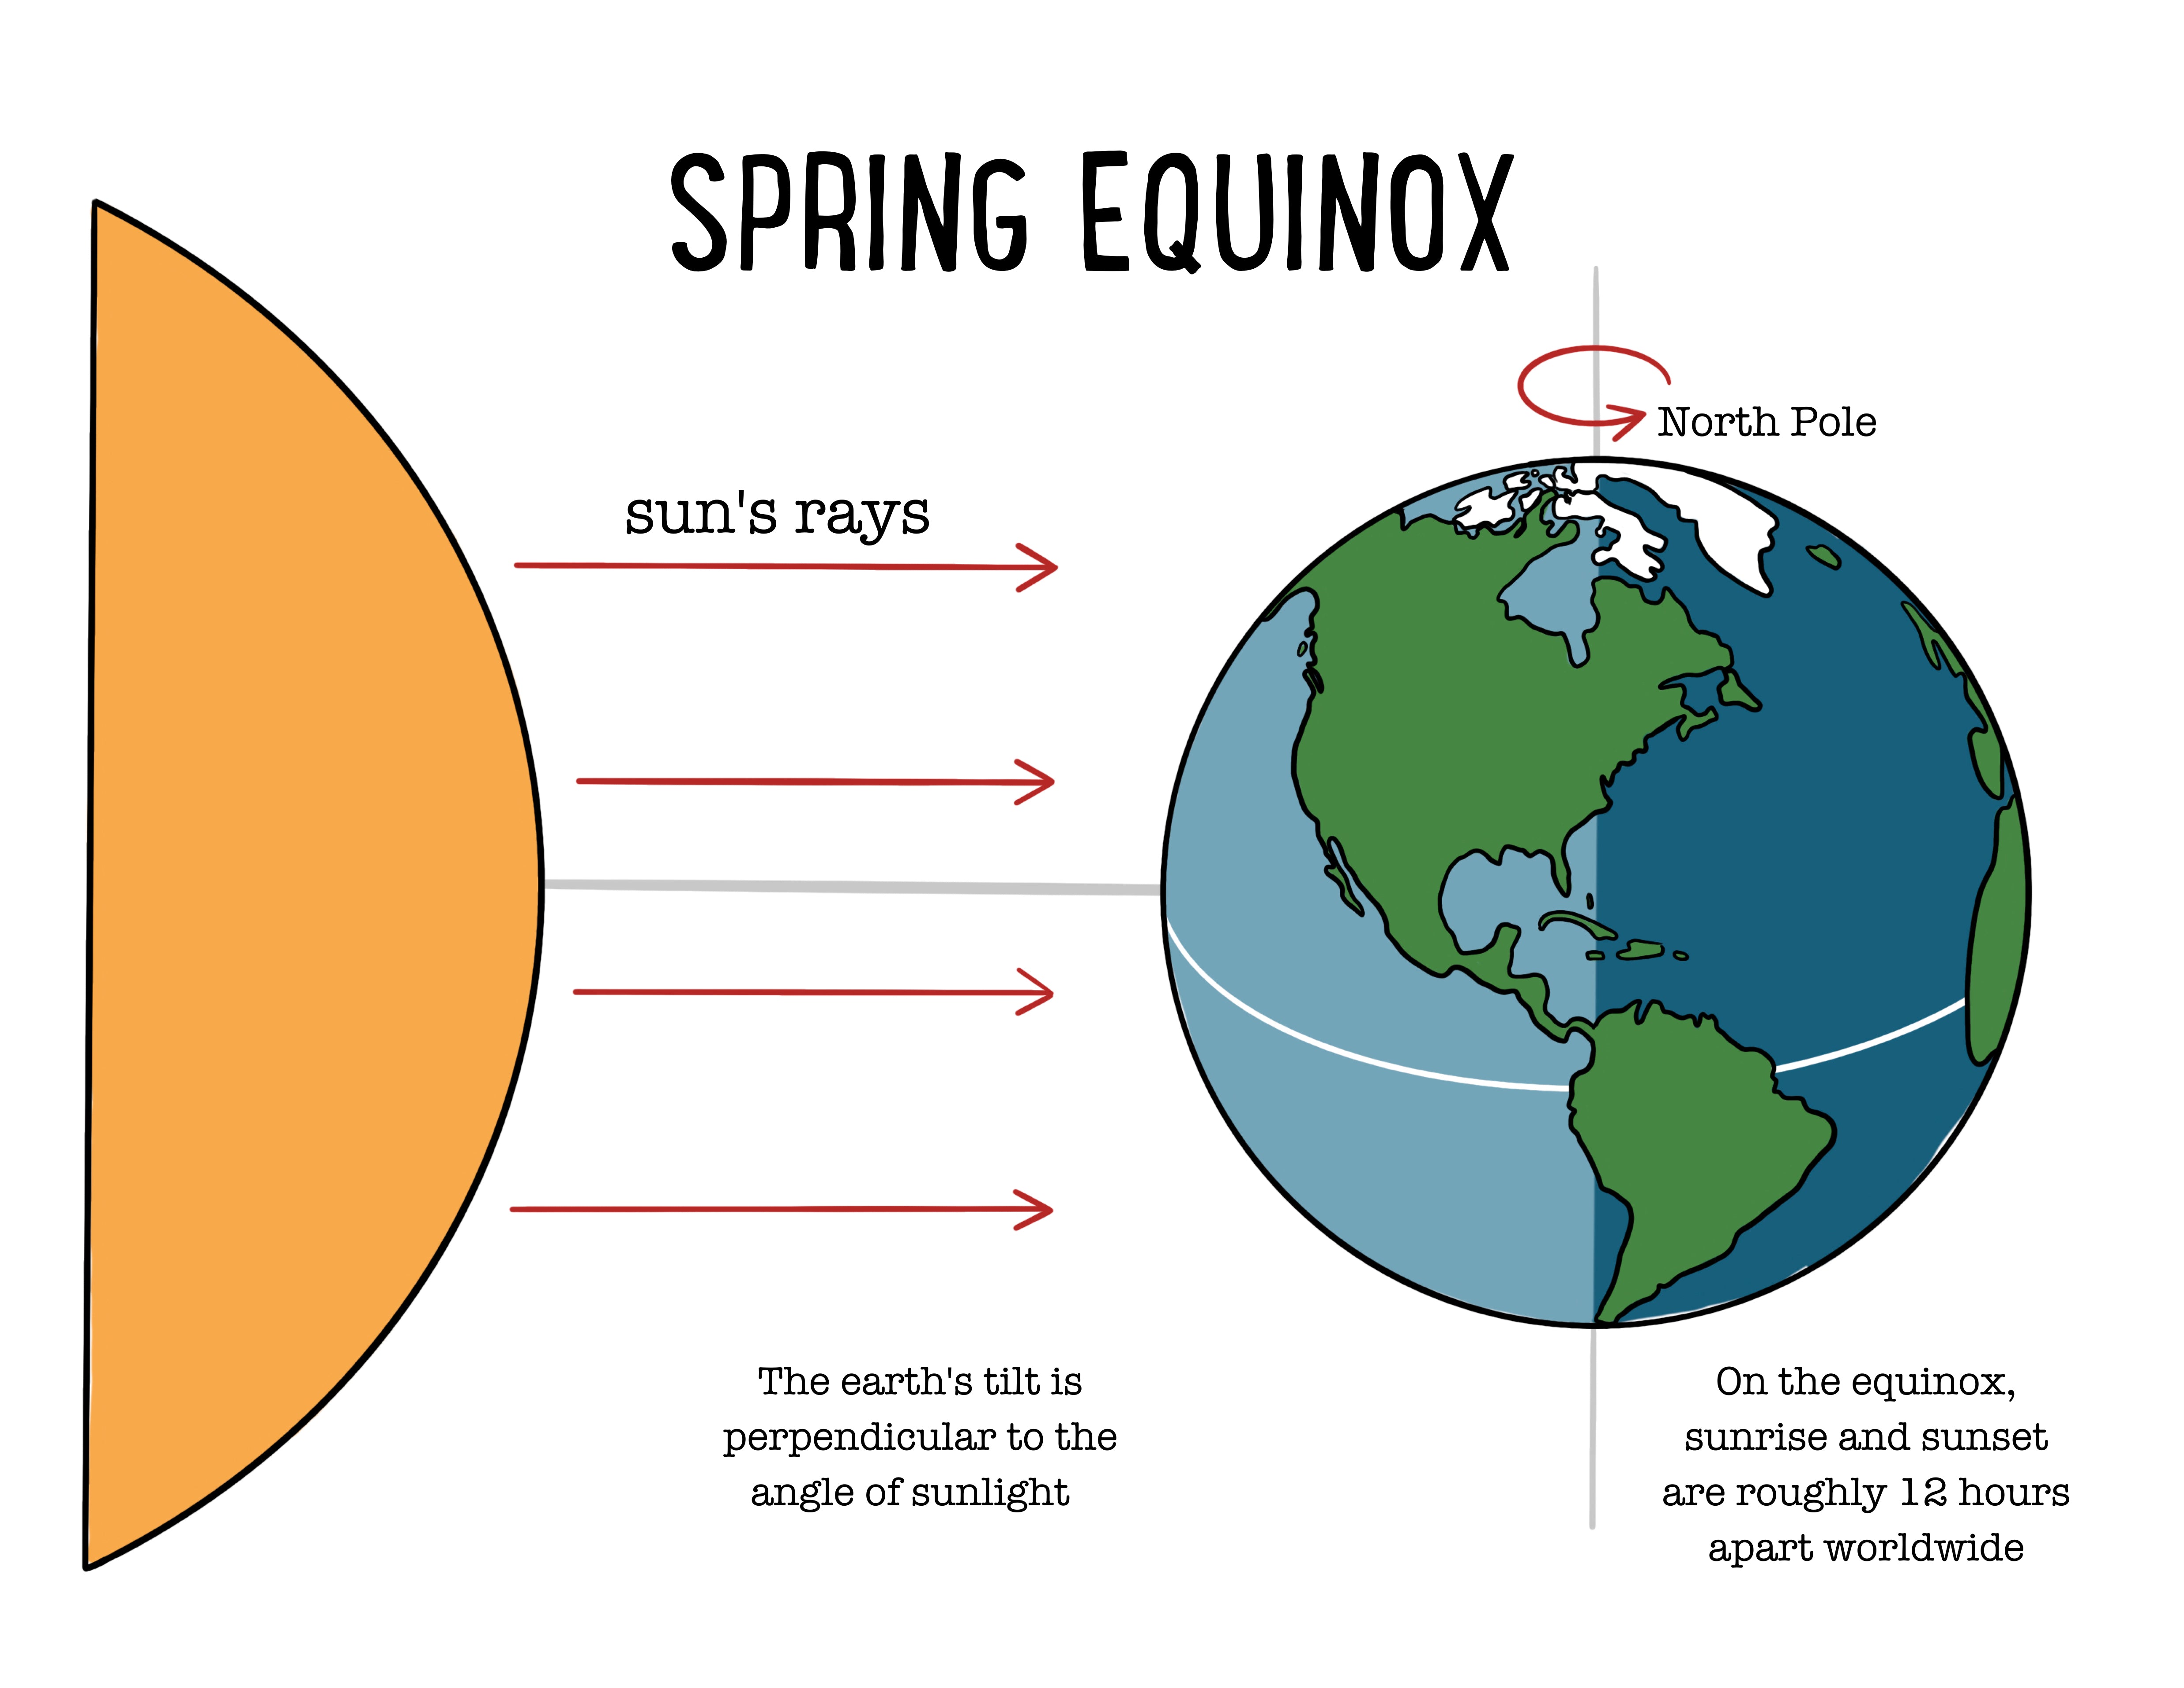 Spring Equinox: A Digital Curriculum of Curiosity